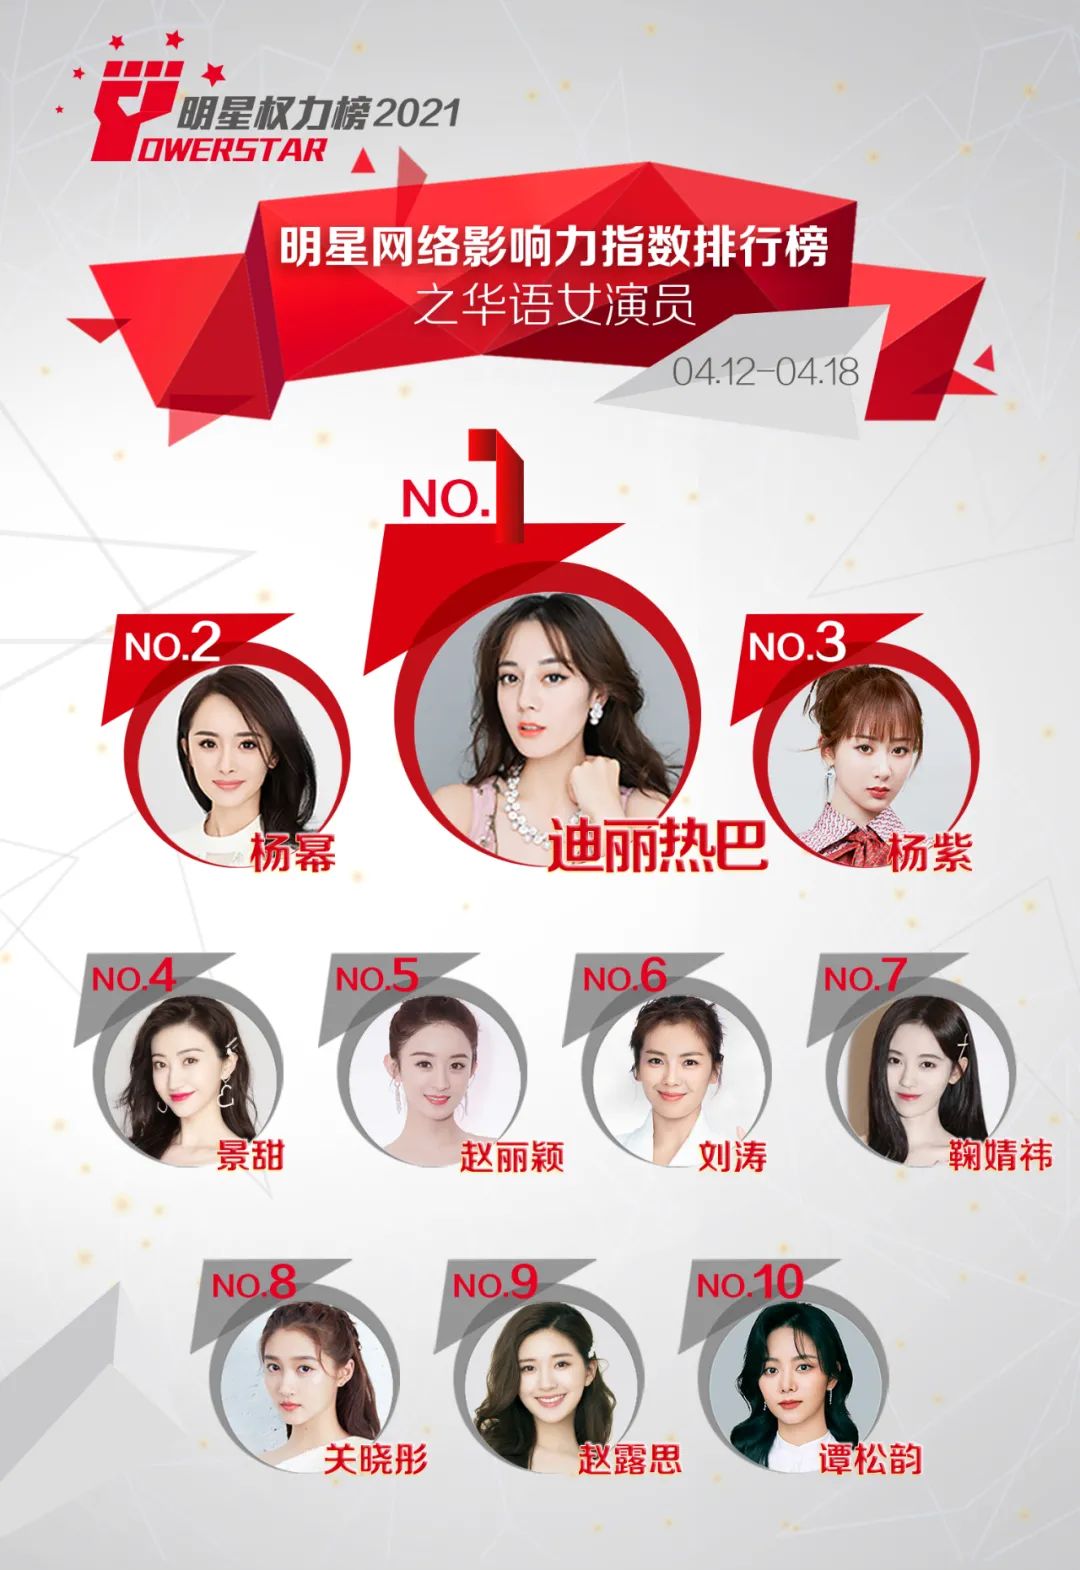 明星网络影响力指数排行榜第289期榜单之华语女演员Top10